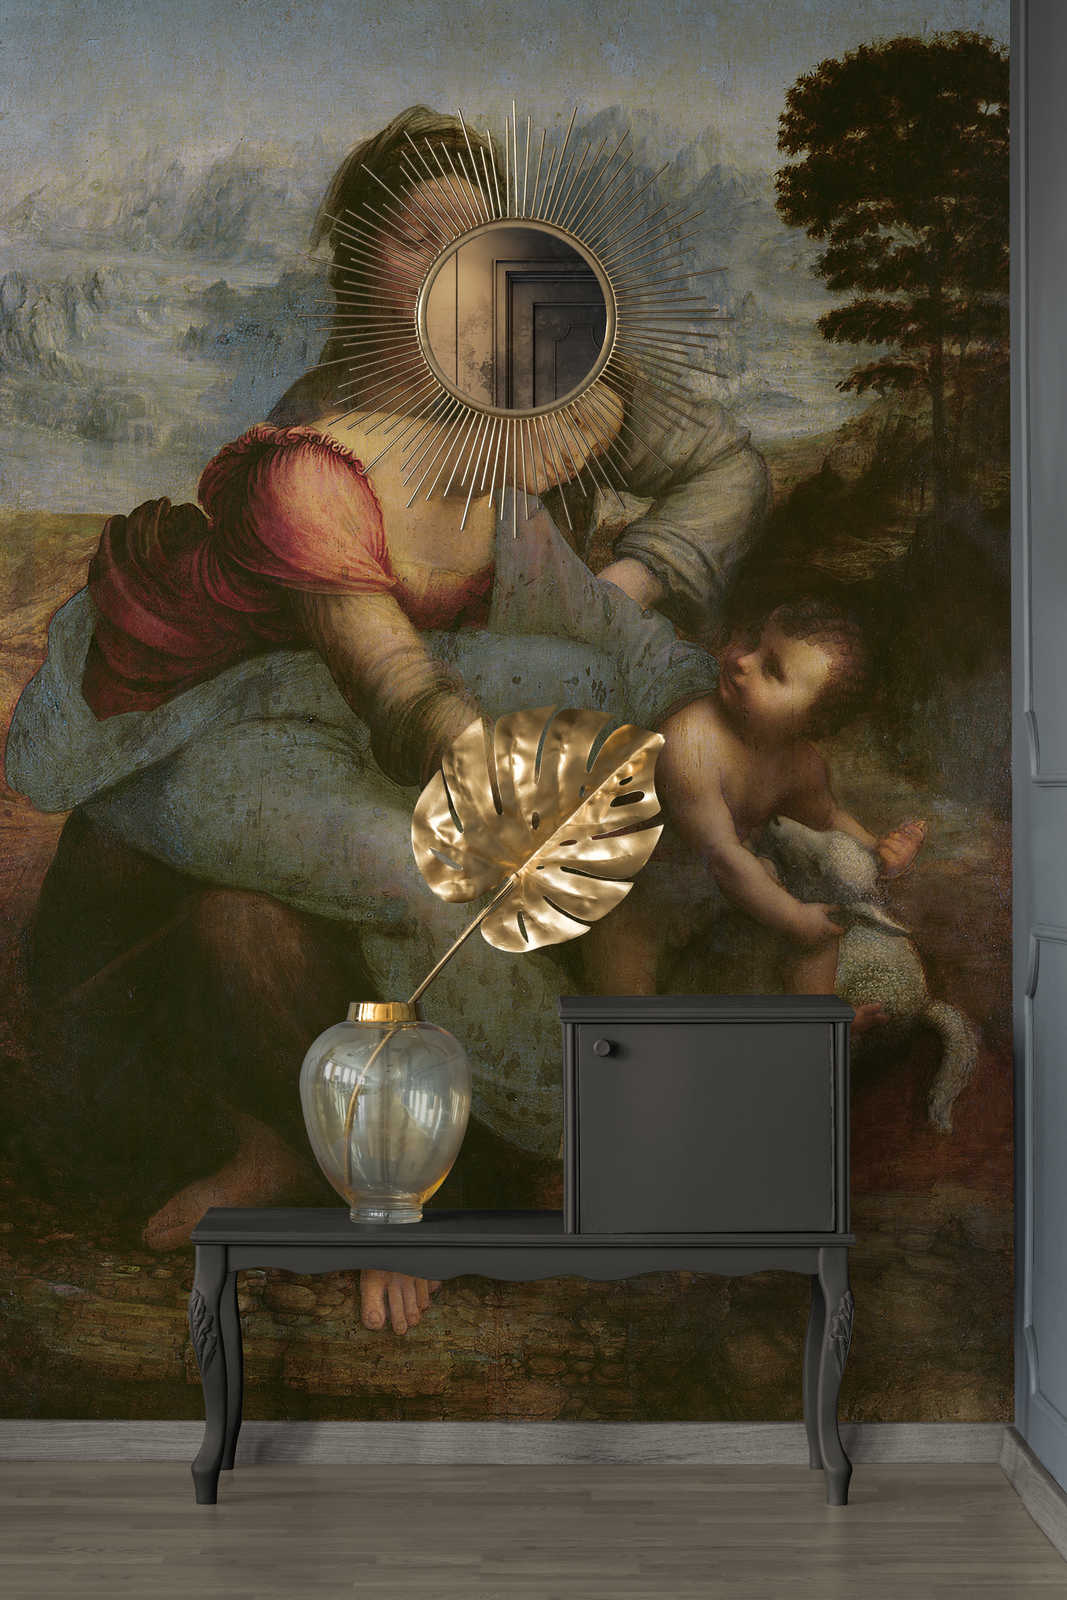             Fototapete "Jungfrau und Kind mit der hl. Anna" von Leonardo da Vinci
        